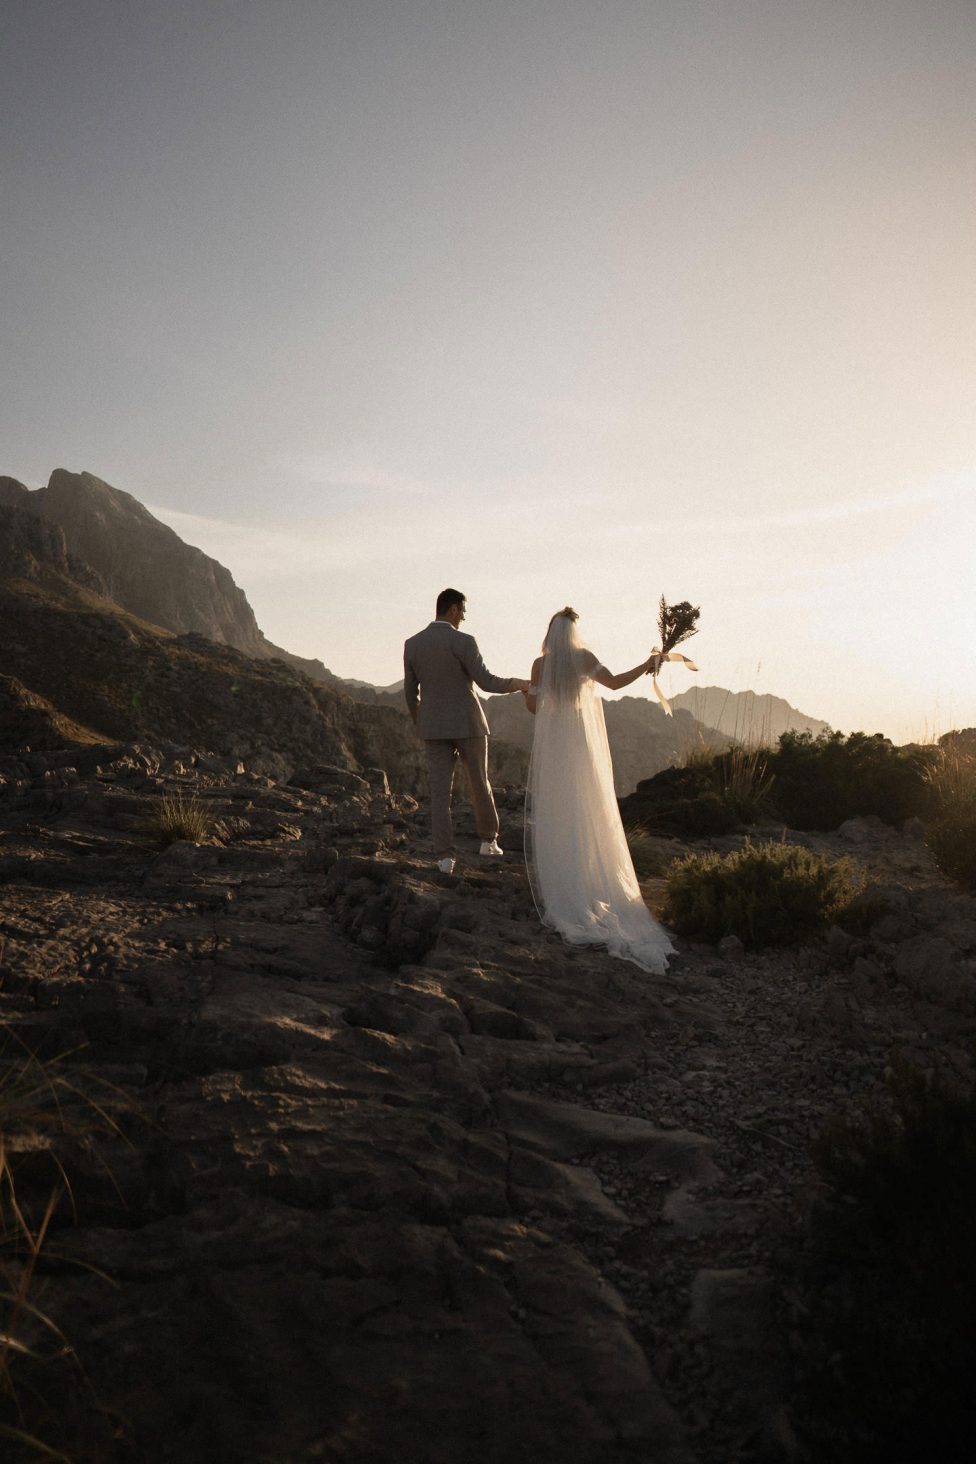 Hochzeitswahn - Ein Paar in Hochzeitskleidung hält Händchen auf einem felsigen Pfad inmitten von Bergen, während die Braut einen Blumenstrauß hält und die untergehende Sonne einen warmen Schein wirft.